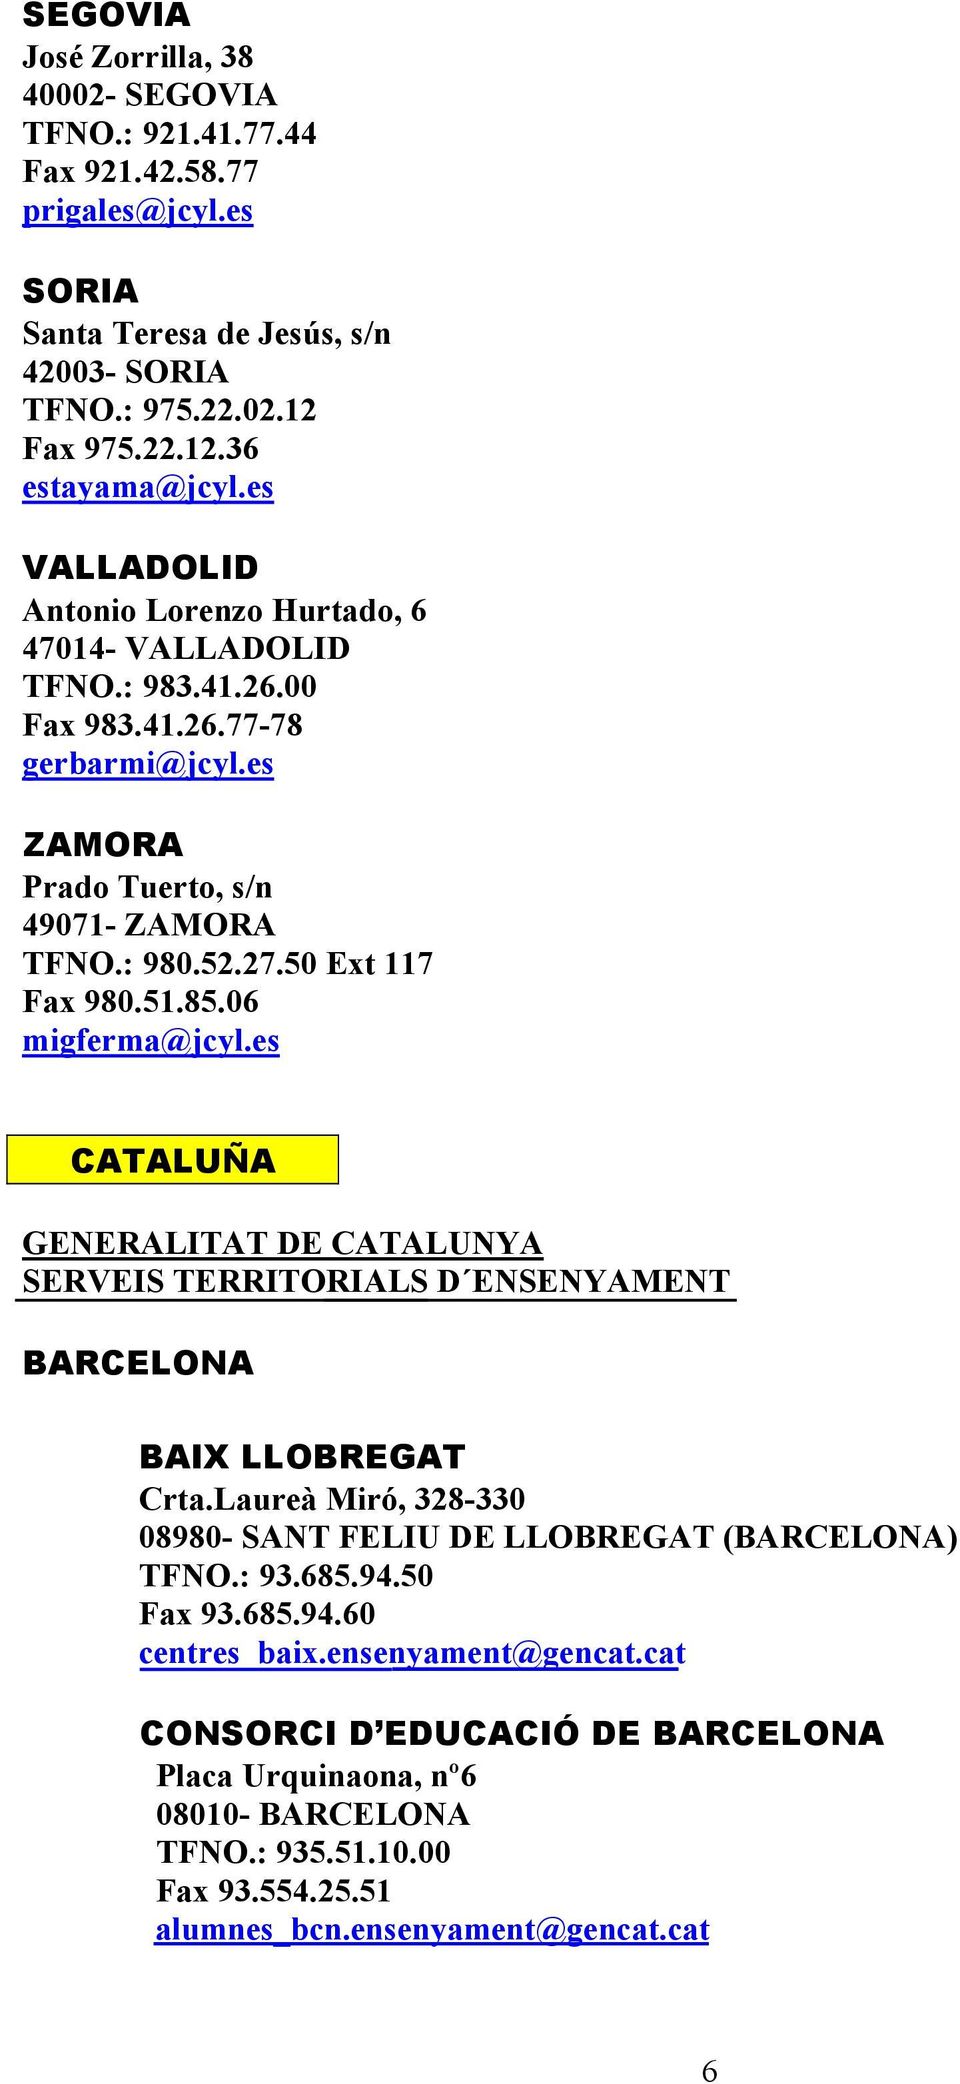 06 migferma@jcyl.es CATALUÑA GENERALITAT DE CATALUNYA SERVEIS TERRITORIALS D ENSENYAMENT BARCELONA BAIX LLOBREGAT Crta.Laureà Miró, 328-330 08980- SANT FELIU DE LLOBREGAT (BARCELONA) TFNO.: 93.685.